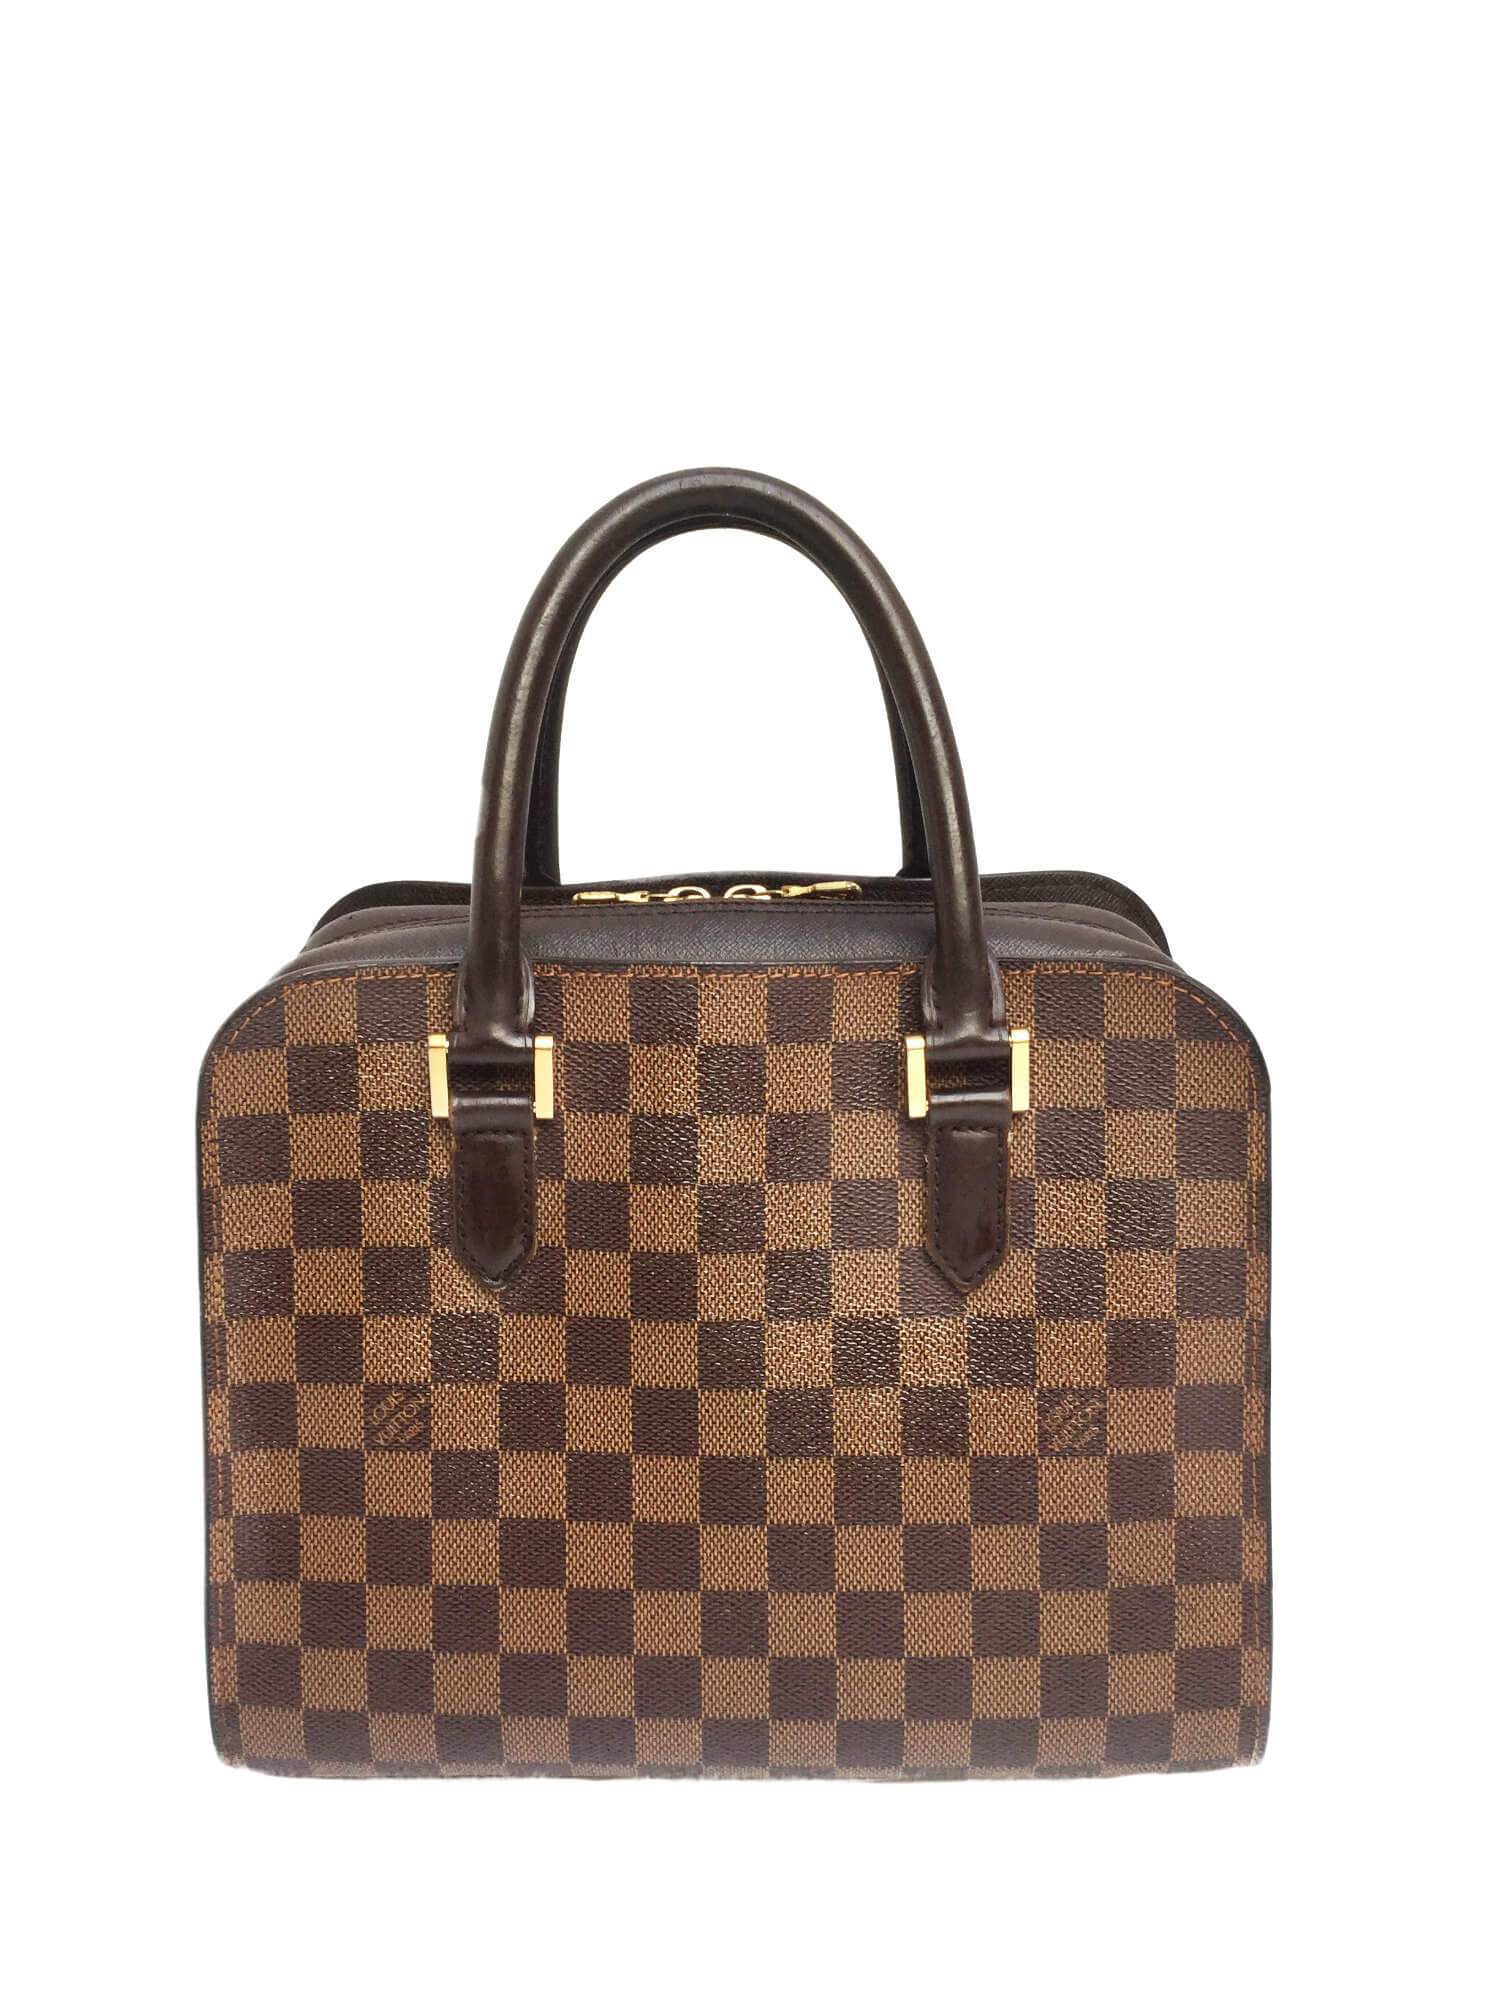 Damier Ebene Triana Top Handle Bag Gold-designer resale